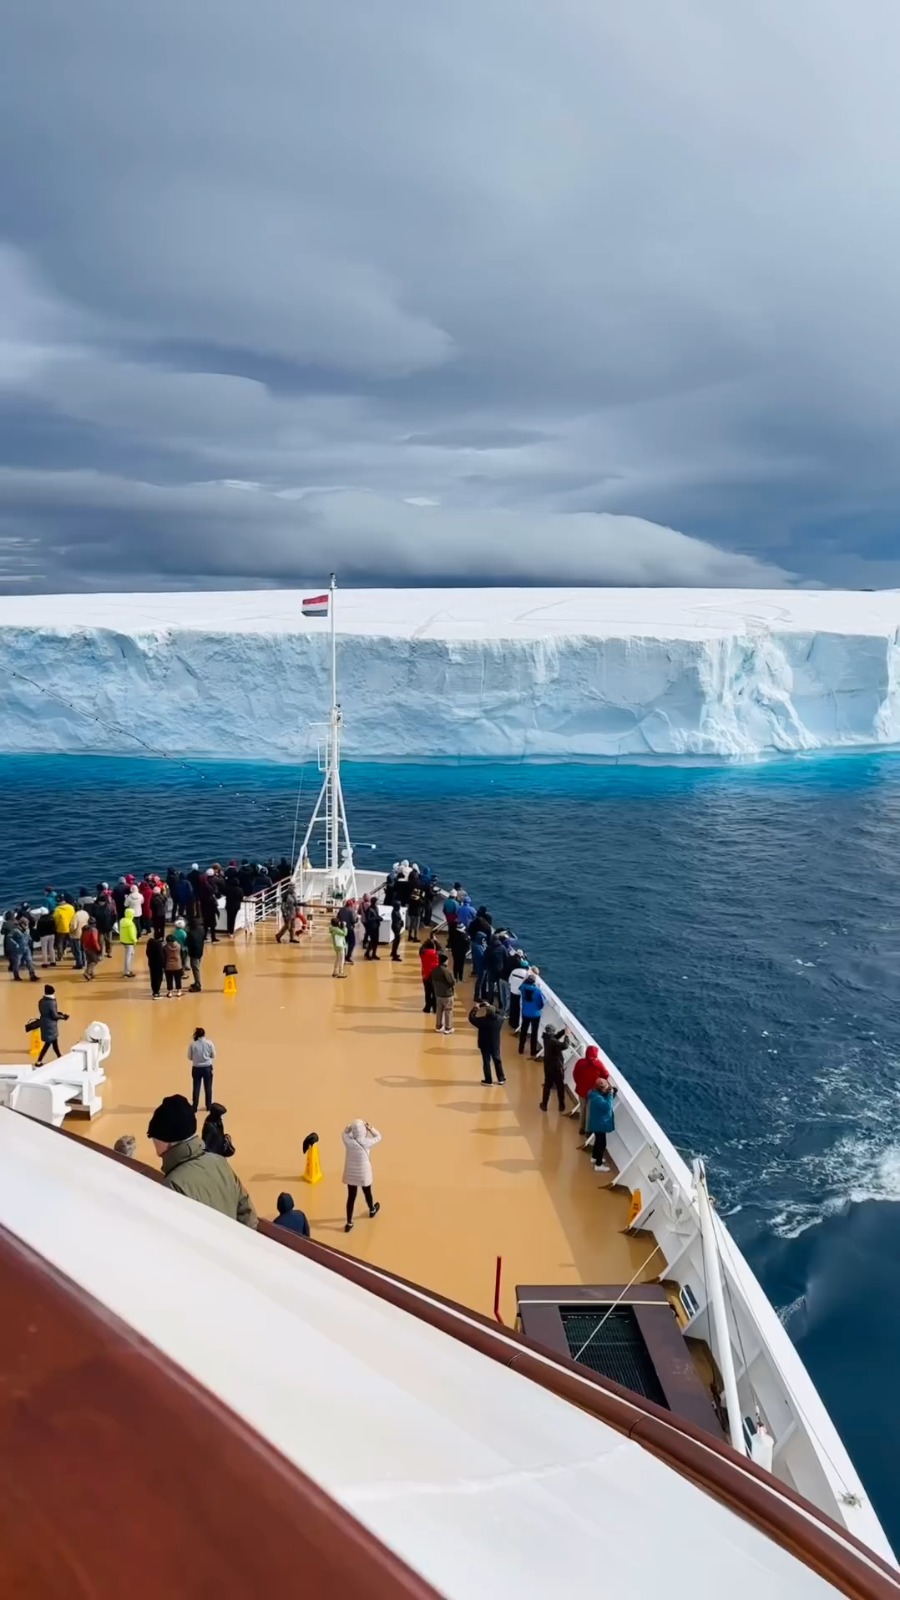 Iceberg right ahead the Ship! 🤯🧊